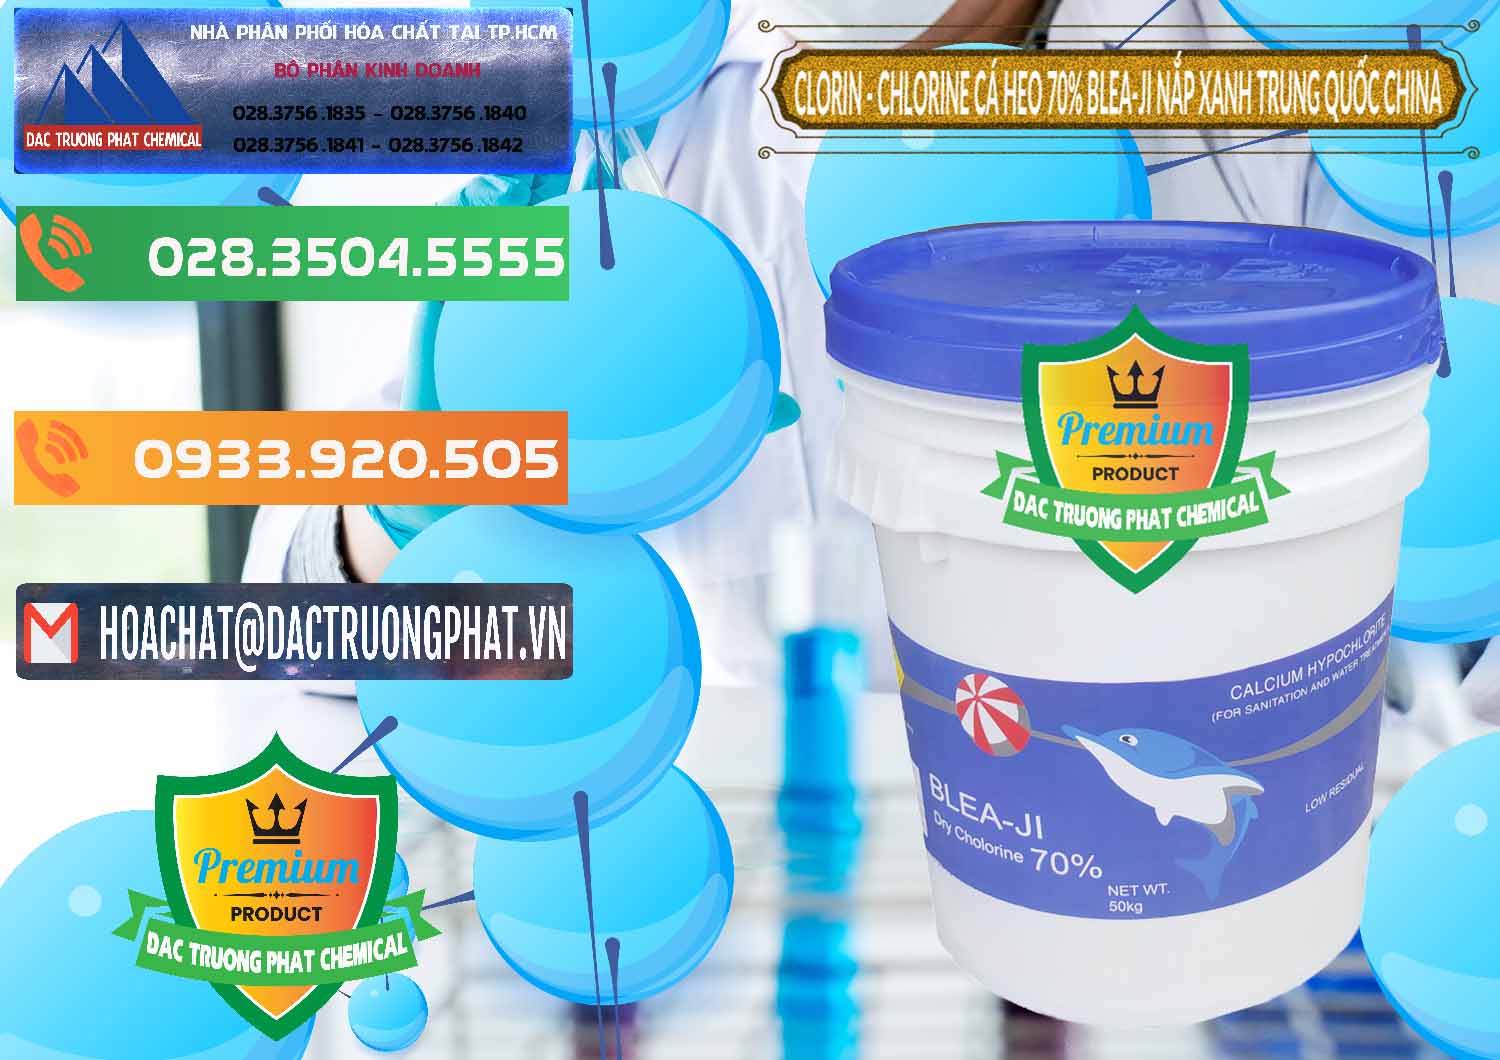 Công ty bán & cung cấp Clorin - Chlorine Cá Heo 70% Cá Heo Blea-Ji Thùng Tròn Nắp Xanh Trung Quốc China - 0208 - Đơn vị chuyên cung ứng & phân phối hóa chất tại TP.HCM - hoachatxulynuoc.com.vn